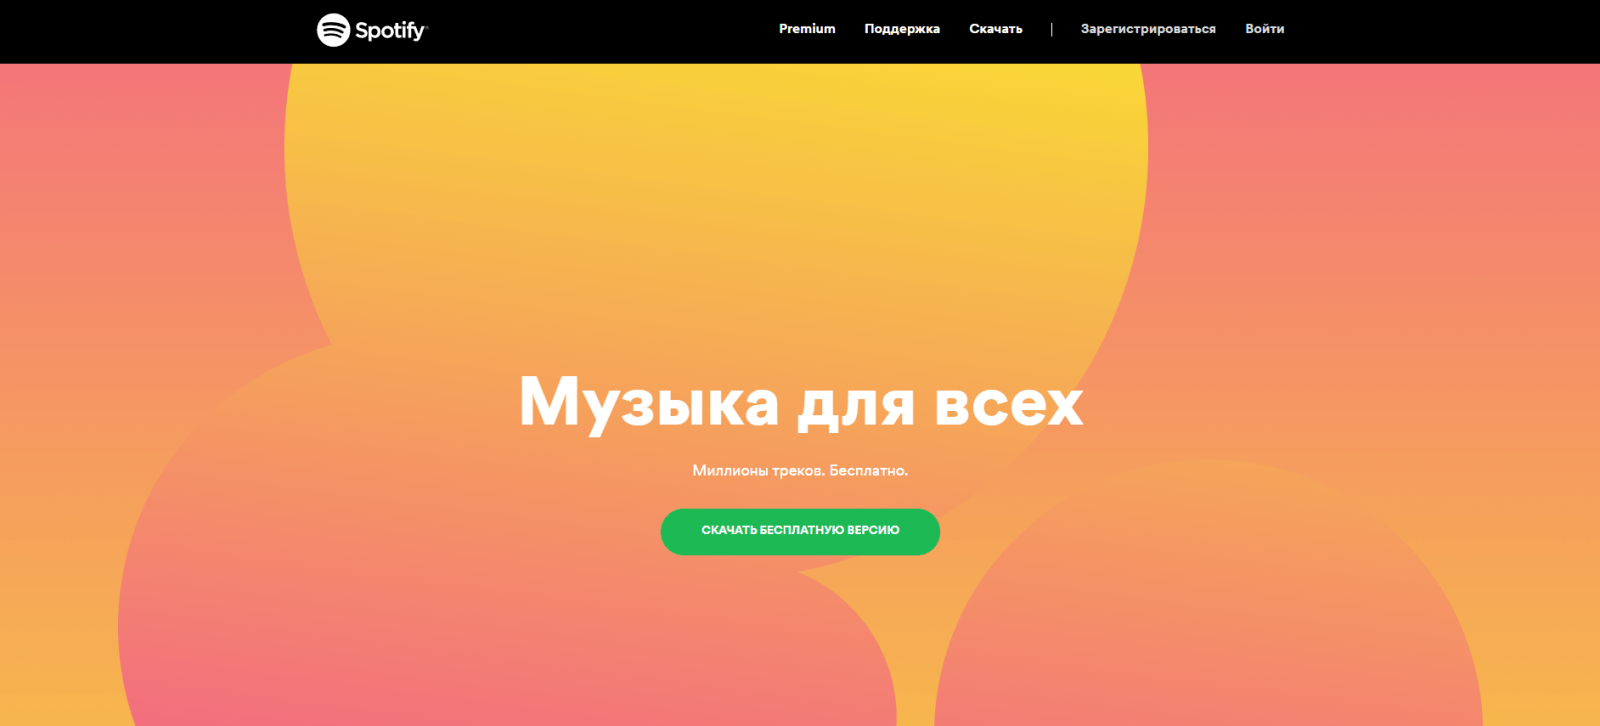 Spotify только что запустился в России. Добро пожаловать (image 1)